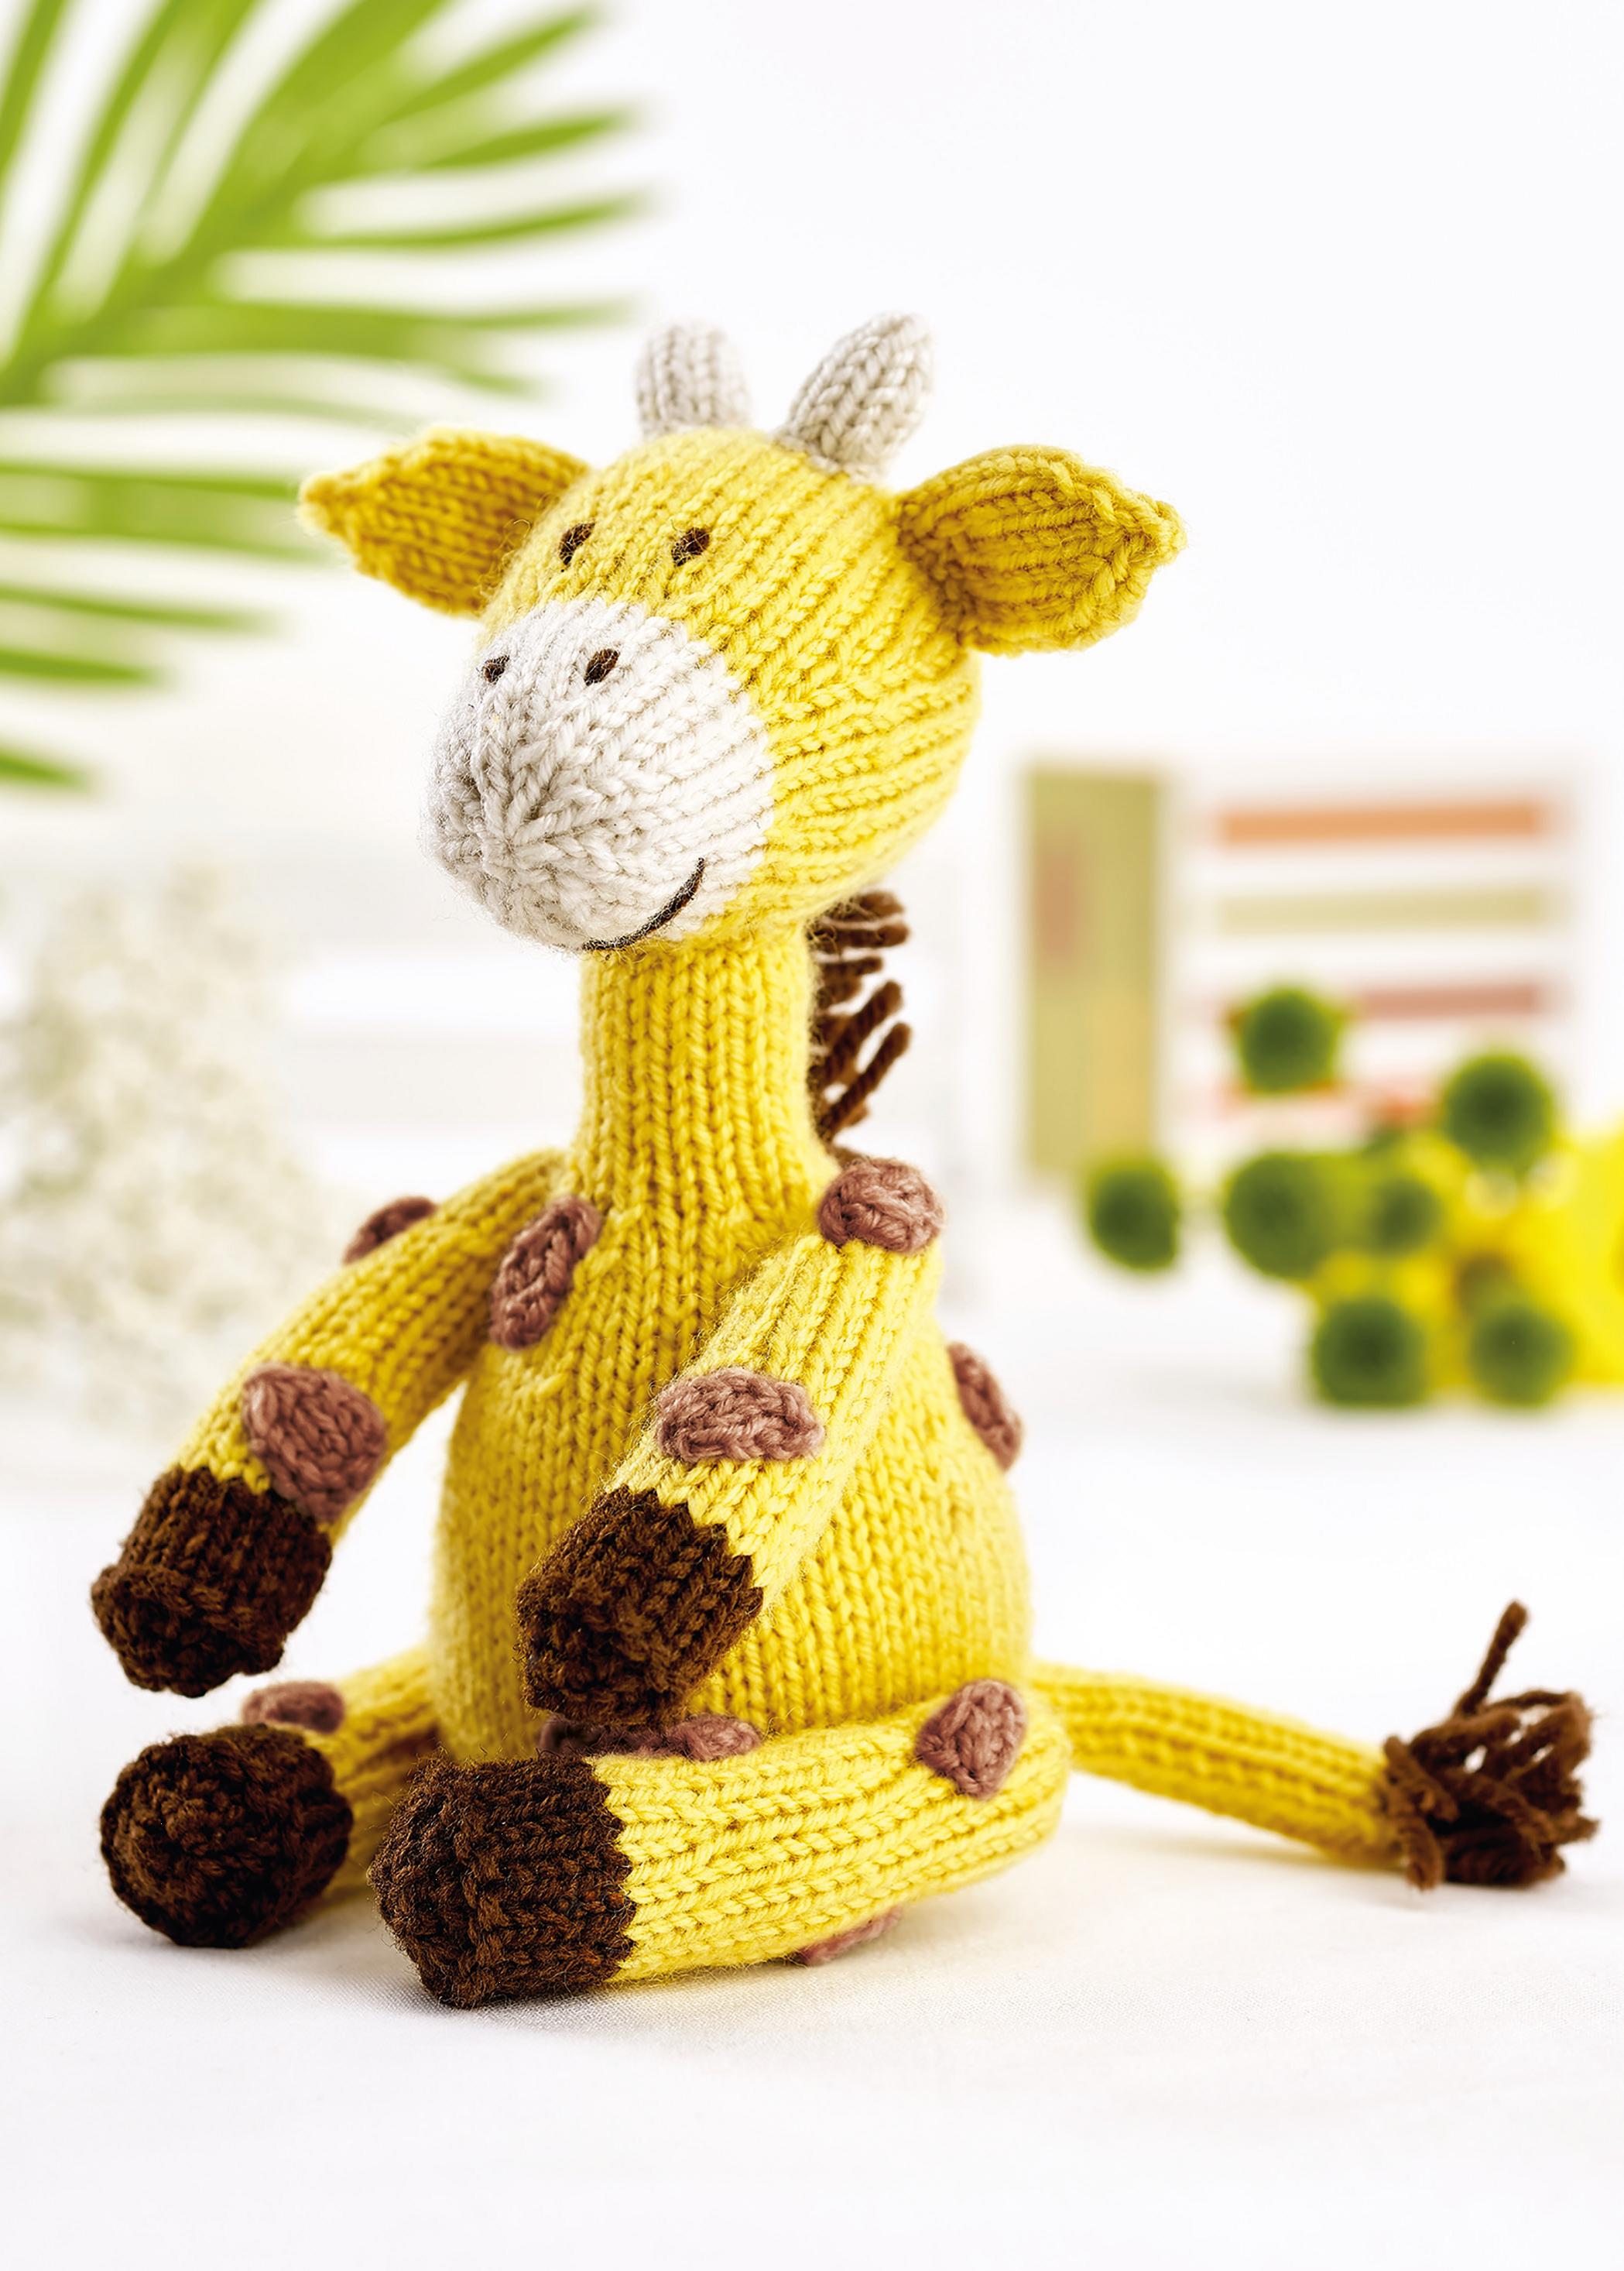 Giraffe Toy Knitting Patterns Let's Knit Magazine